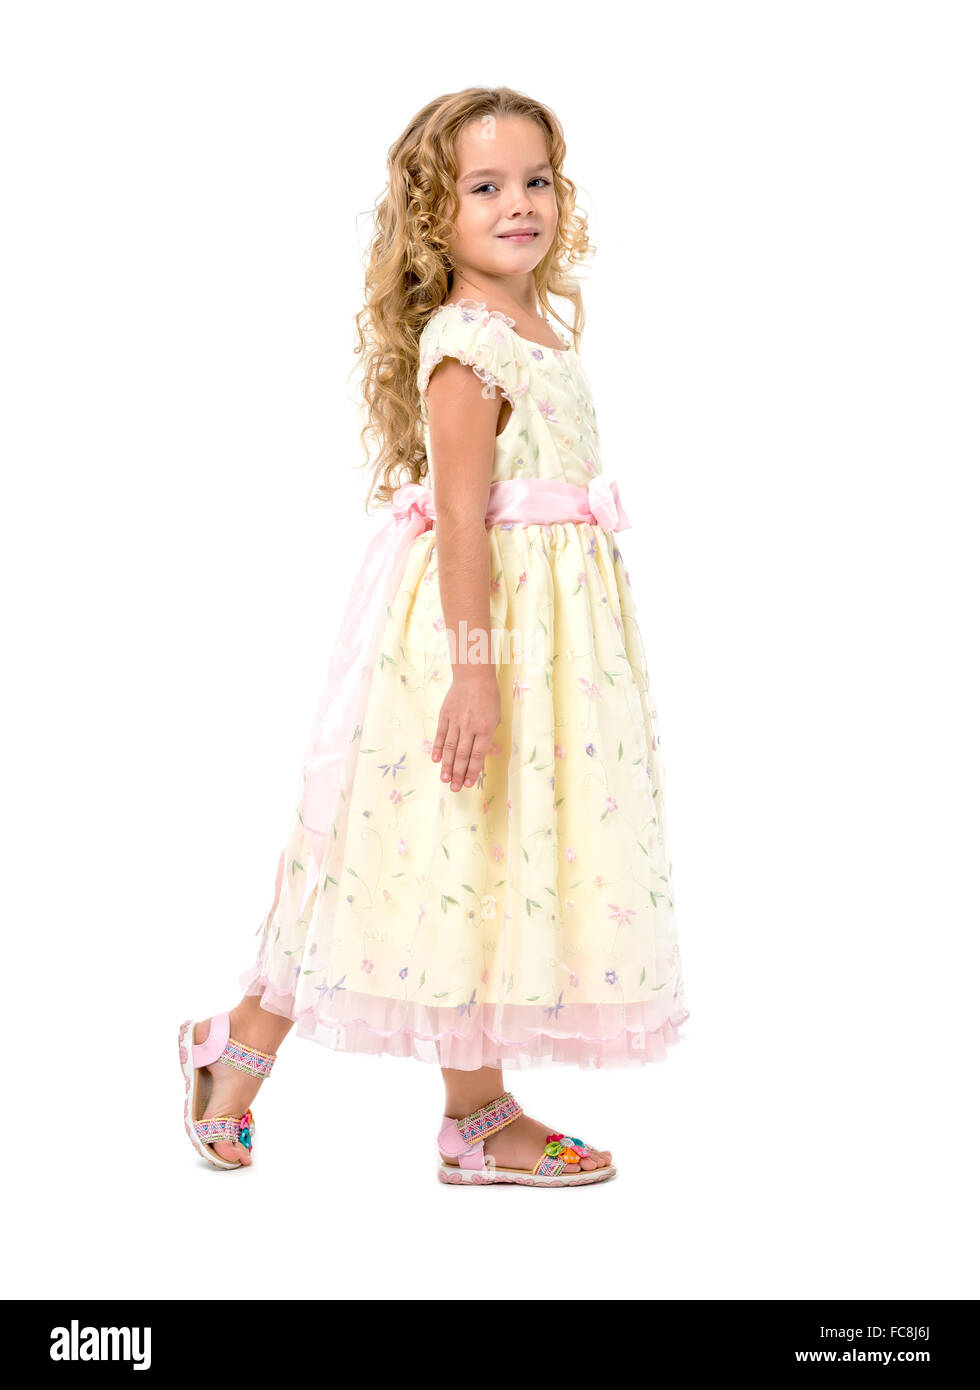 Little Girl in a Light Dress Posing Stock Photo